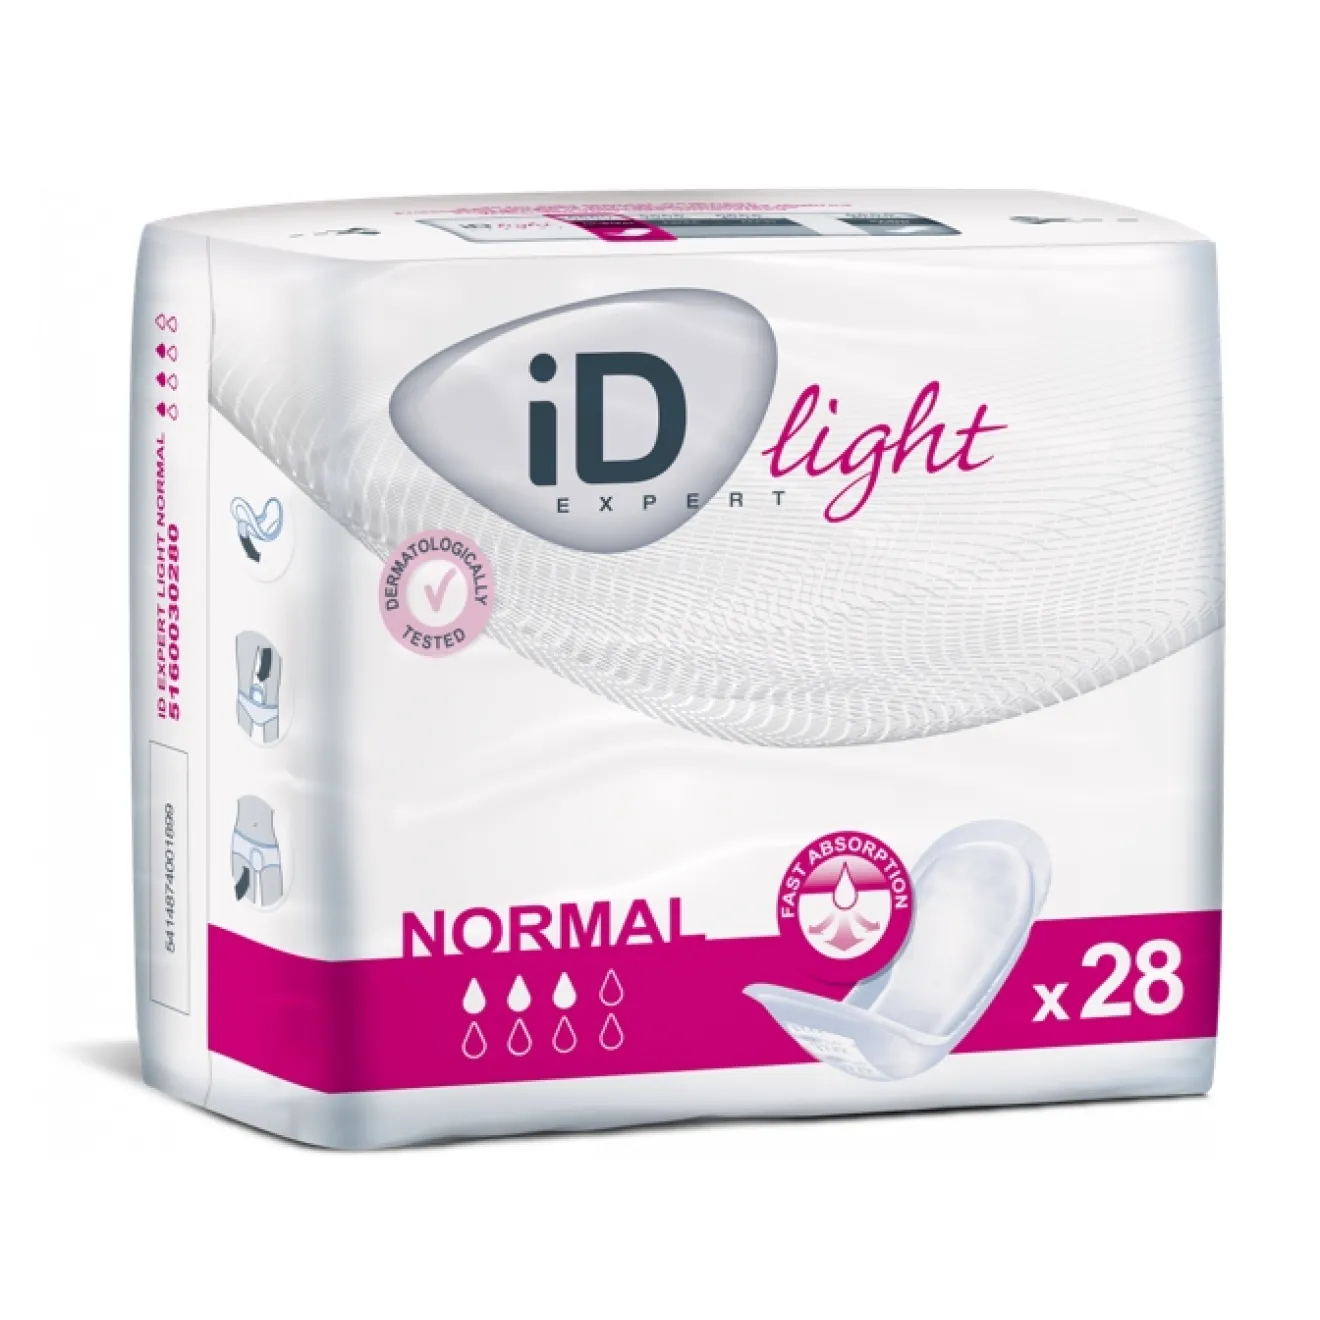 ID Expert light normal 28 ST